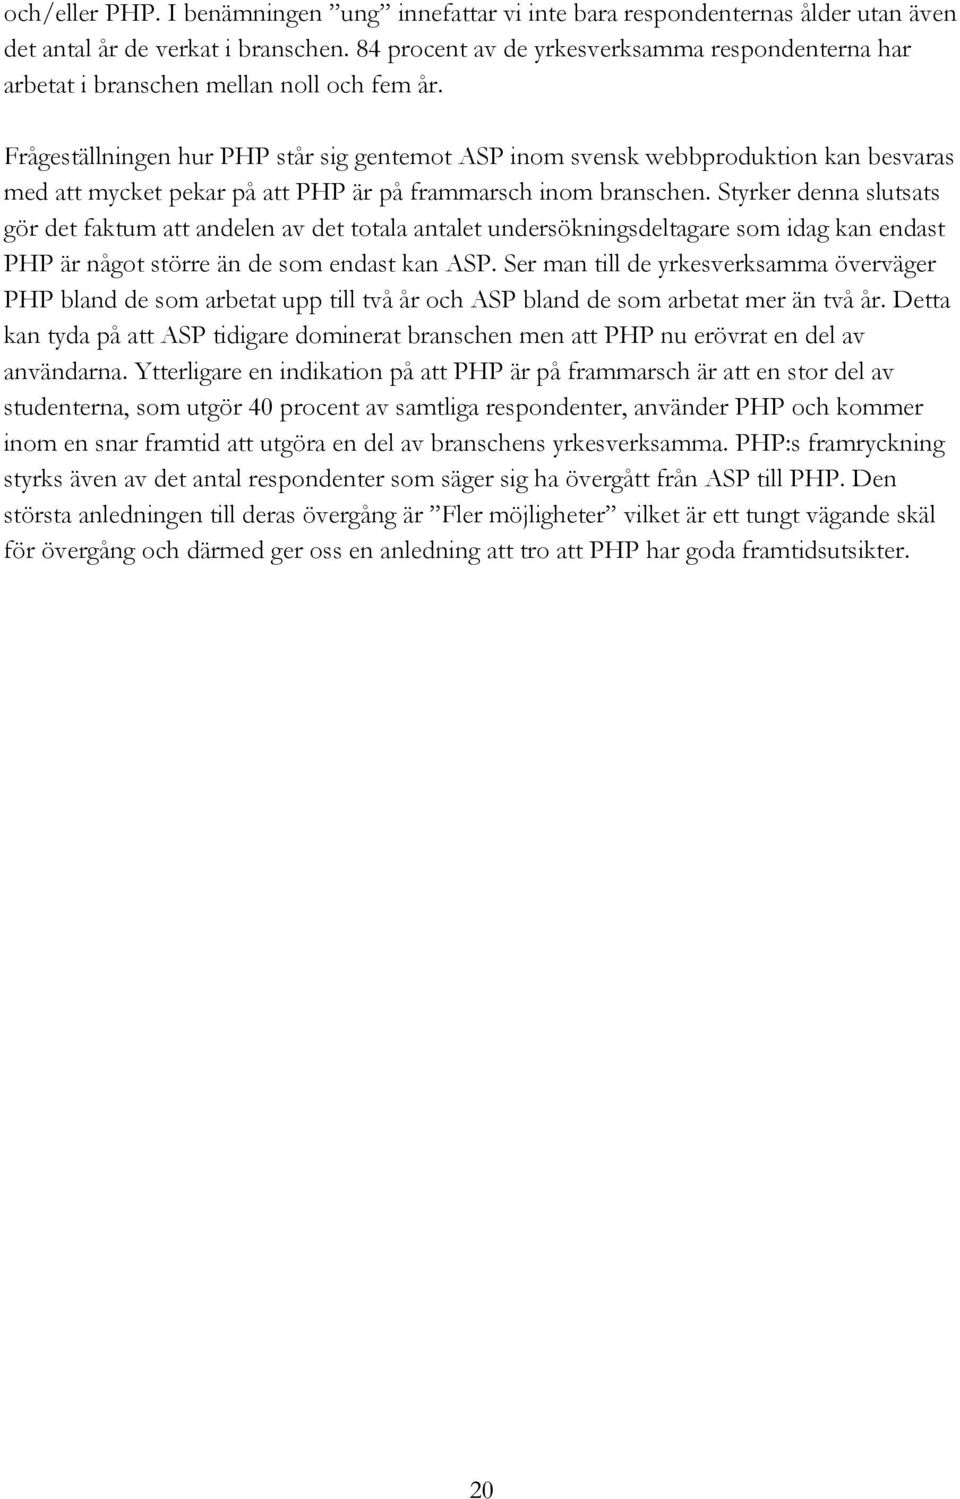 Frågeställningen hur PHP står sig gentemot ASP inom svensk webbproduktion kan besvaras med att mycket pekar på att PHP är på frammarsch inom branschen.